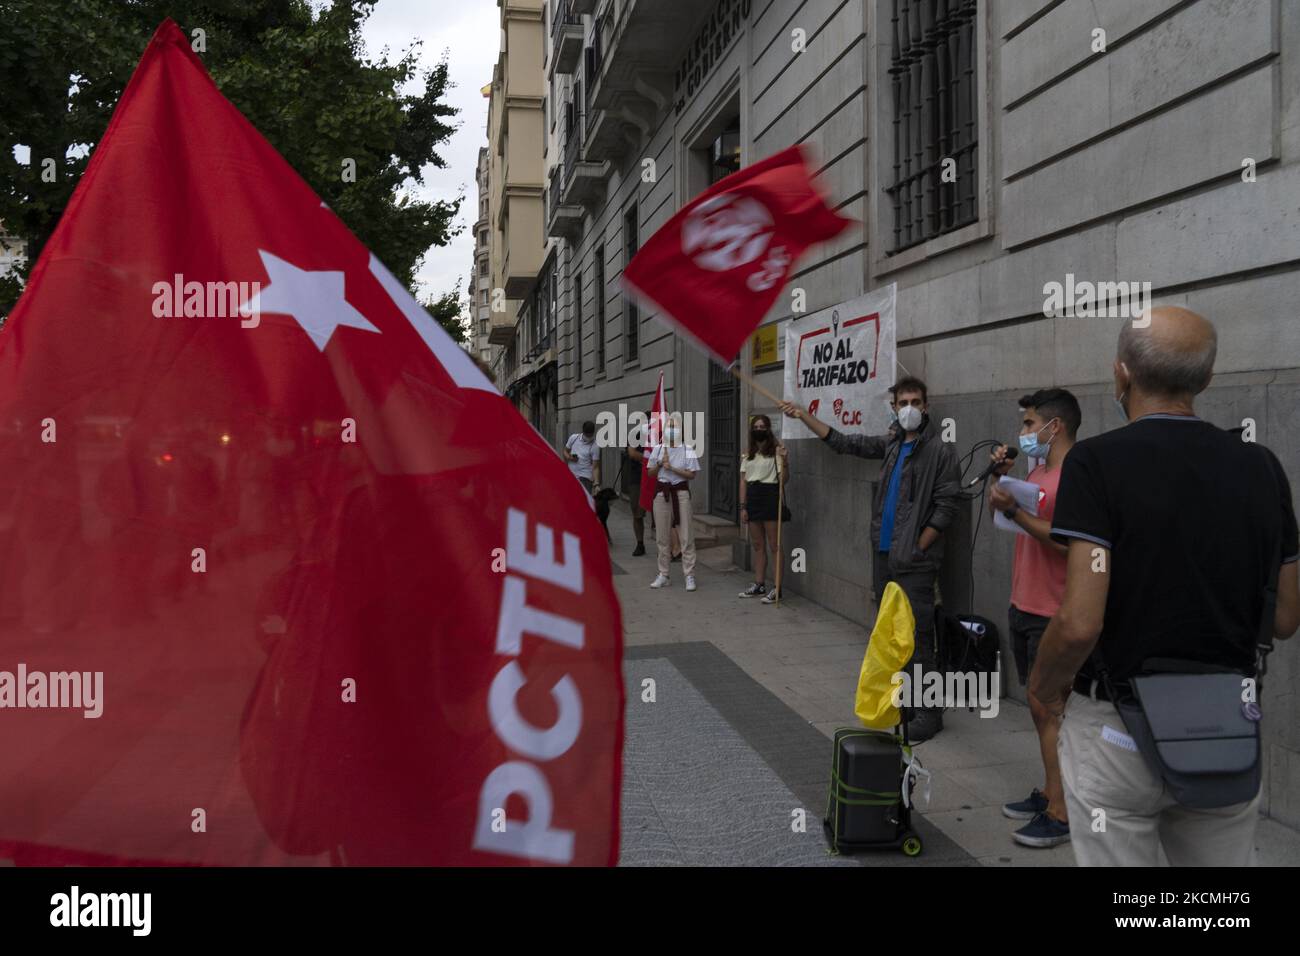 Con banderas rojas, los miembros del Partido Comunista de los Trabajadores (PCTE), se concentraron en contra de la subida del precio de la electricidad conocida como ''el tarifazo''' en la ciudad de Santander, España, el 13 de septiembre de 2021. (Foto de Joaquín Gómez Sastre/NurPhoto) Foto de stock